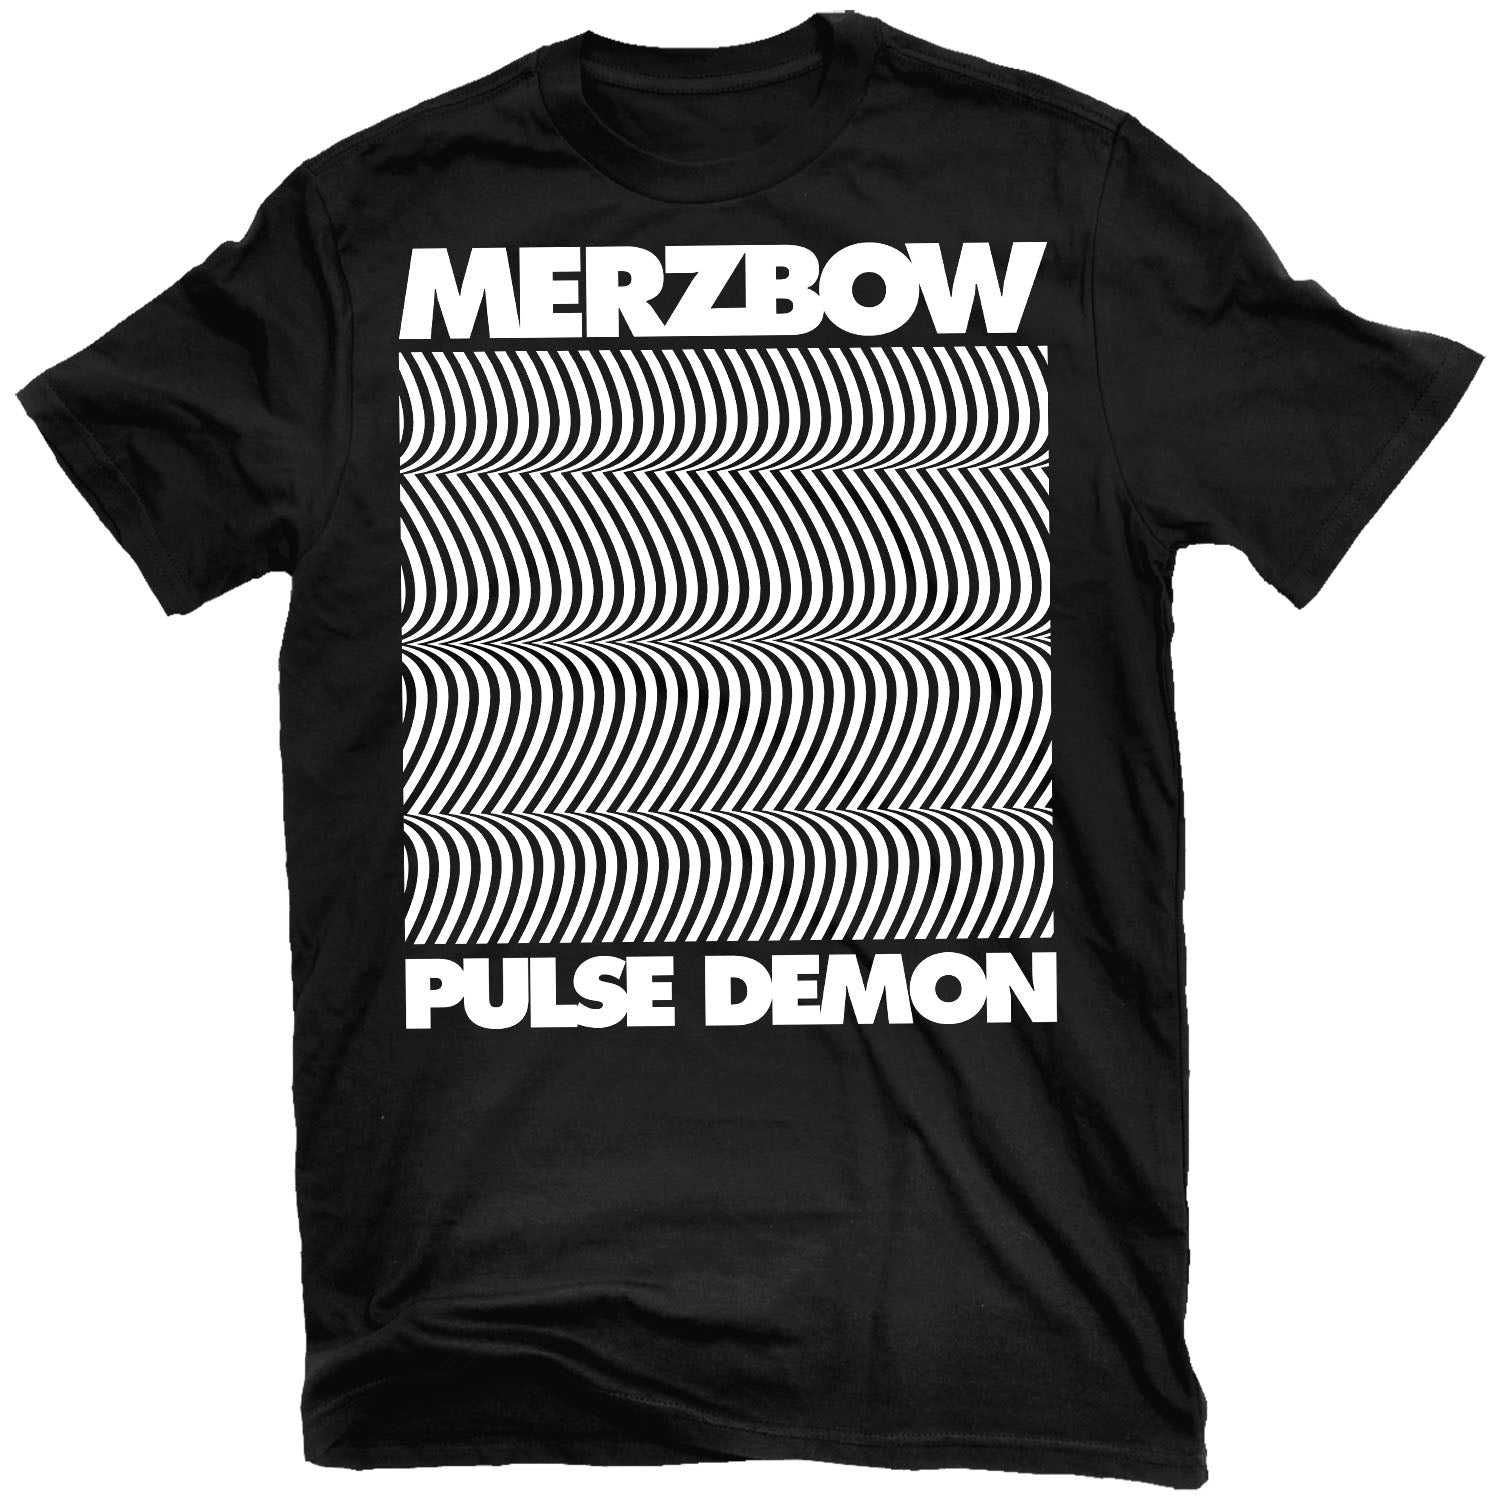 Merzbow "Pulse Demon" T-Shirt